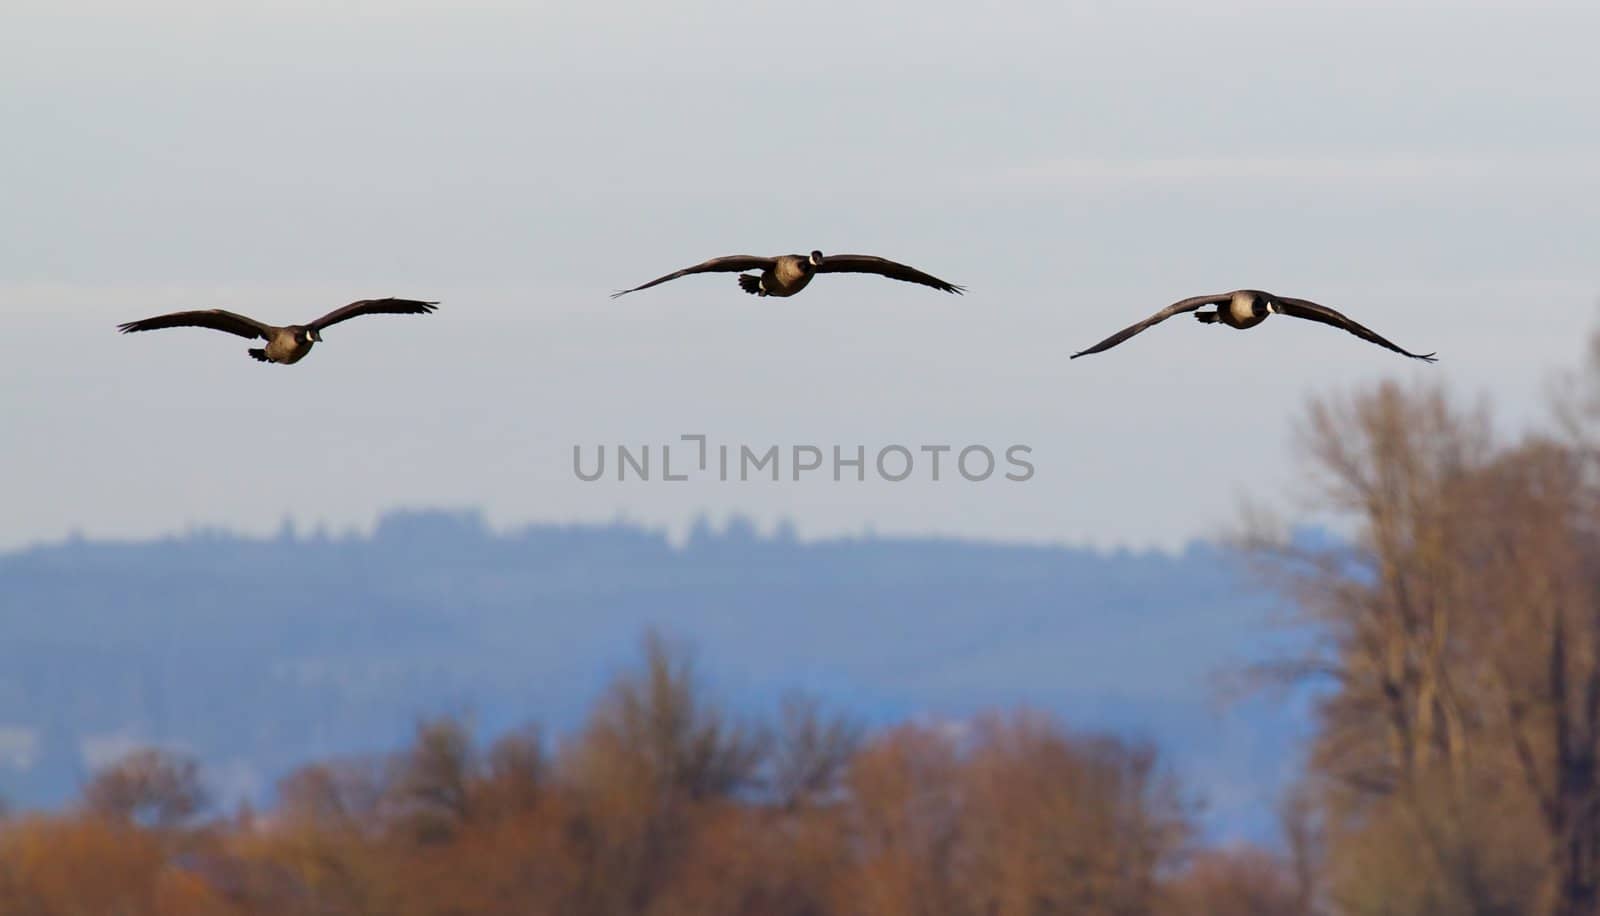 Three Ducks in flight by bobkeenan